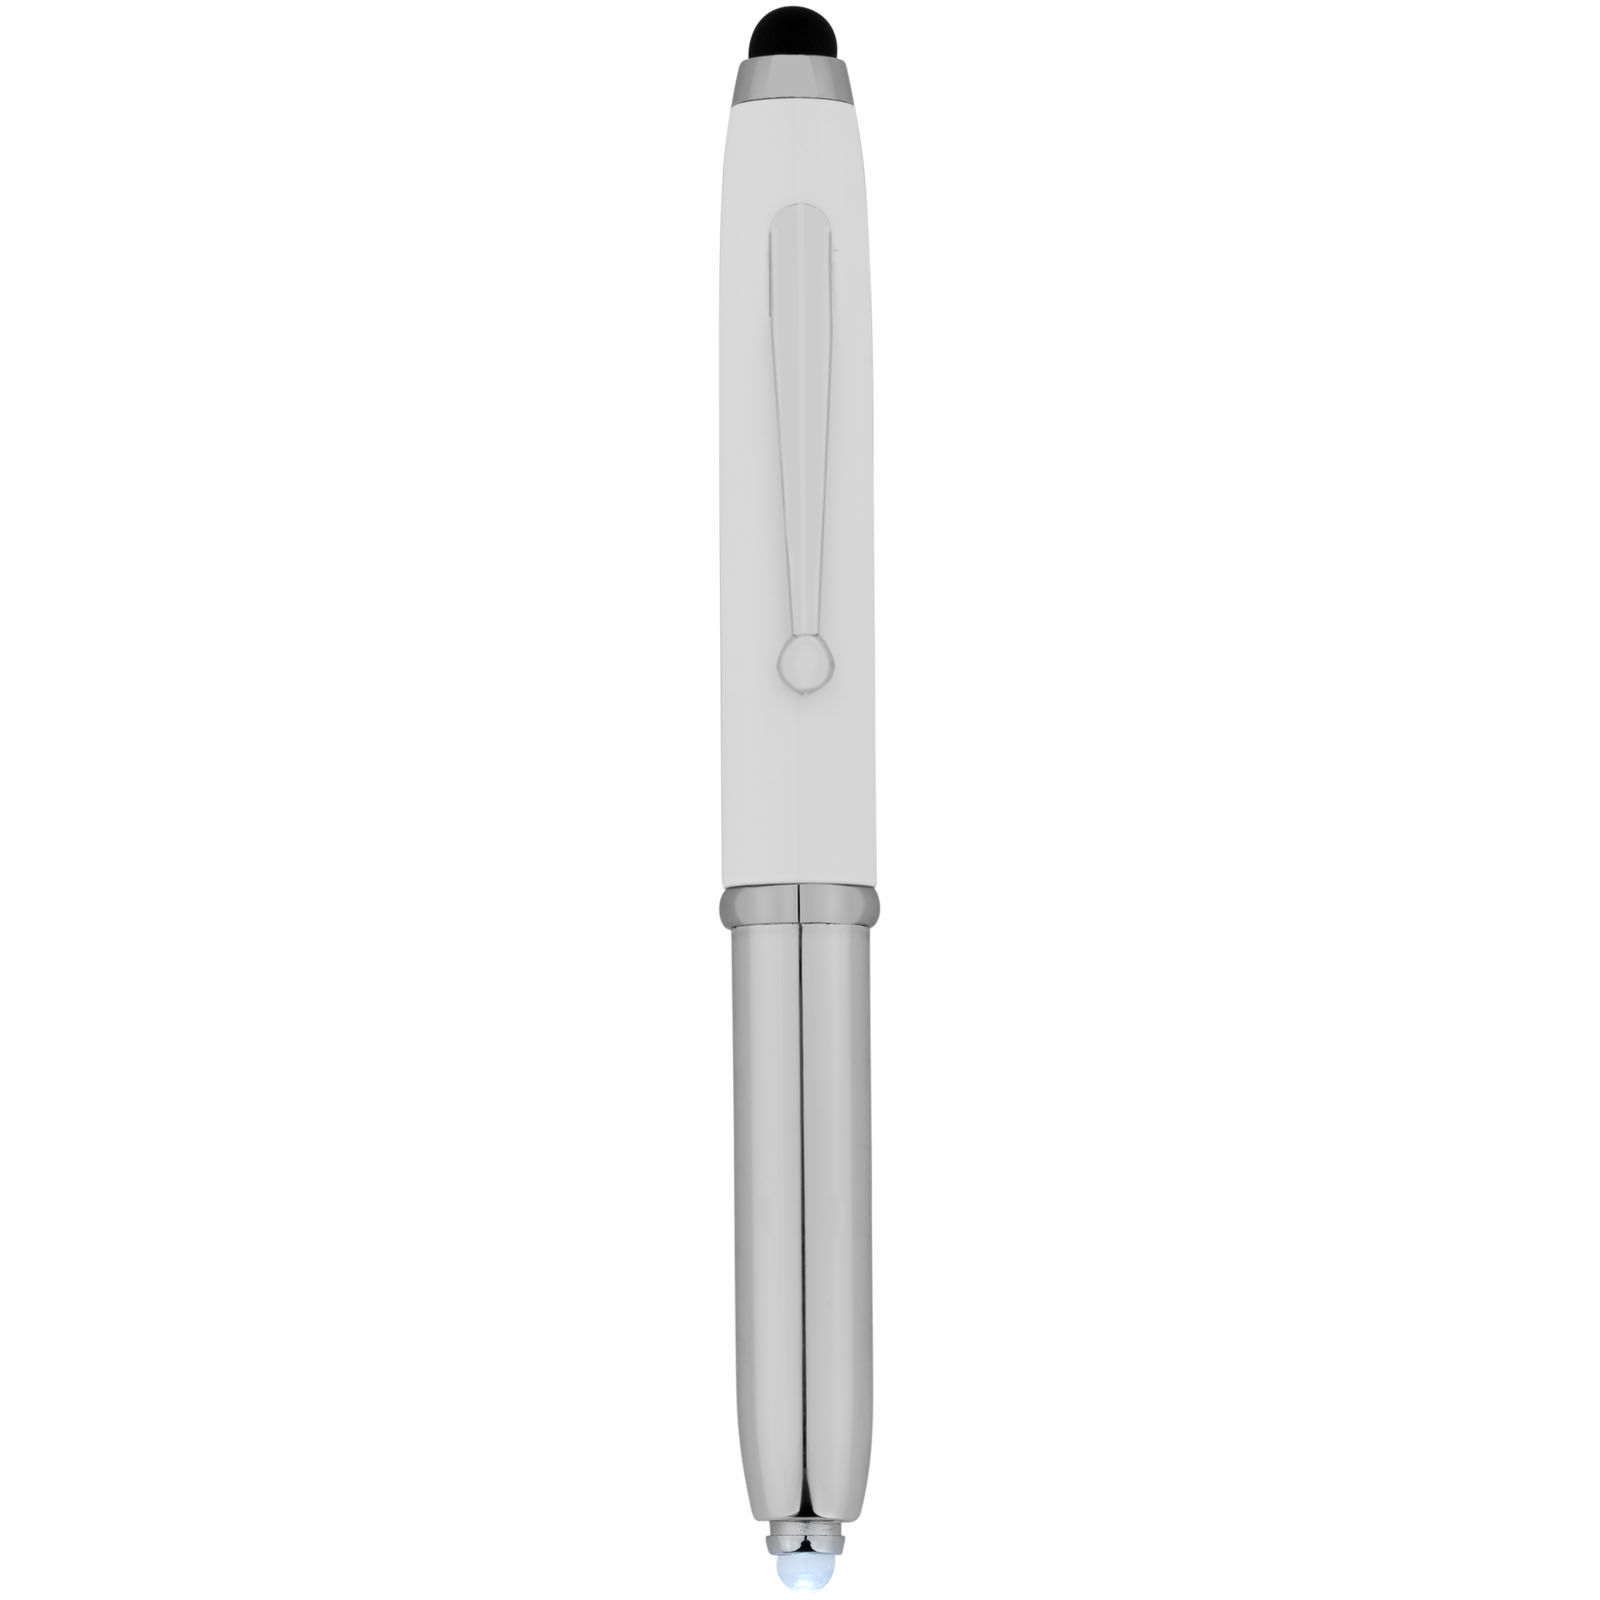 Pens & Writing - Xenon stylus ballpoint pen with LED light